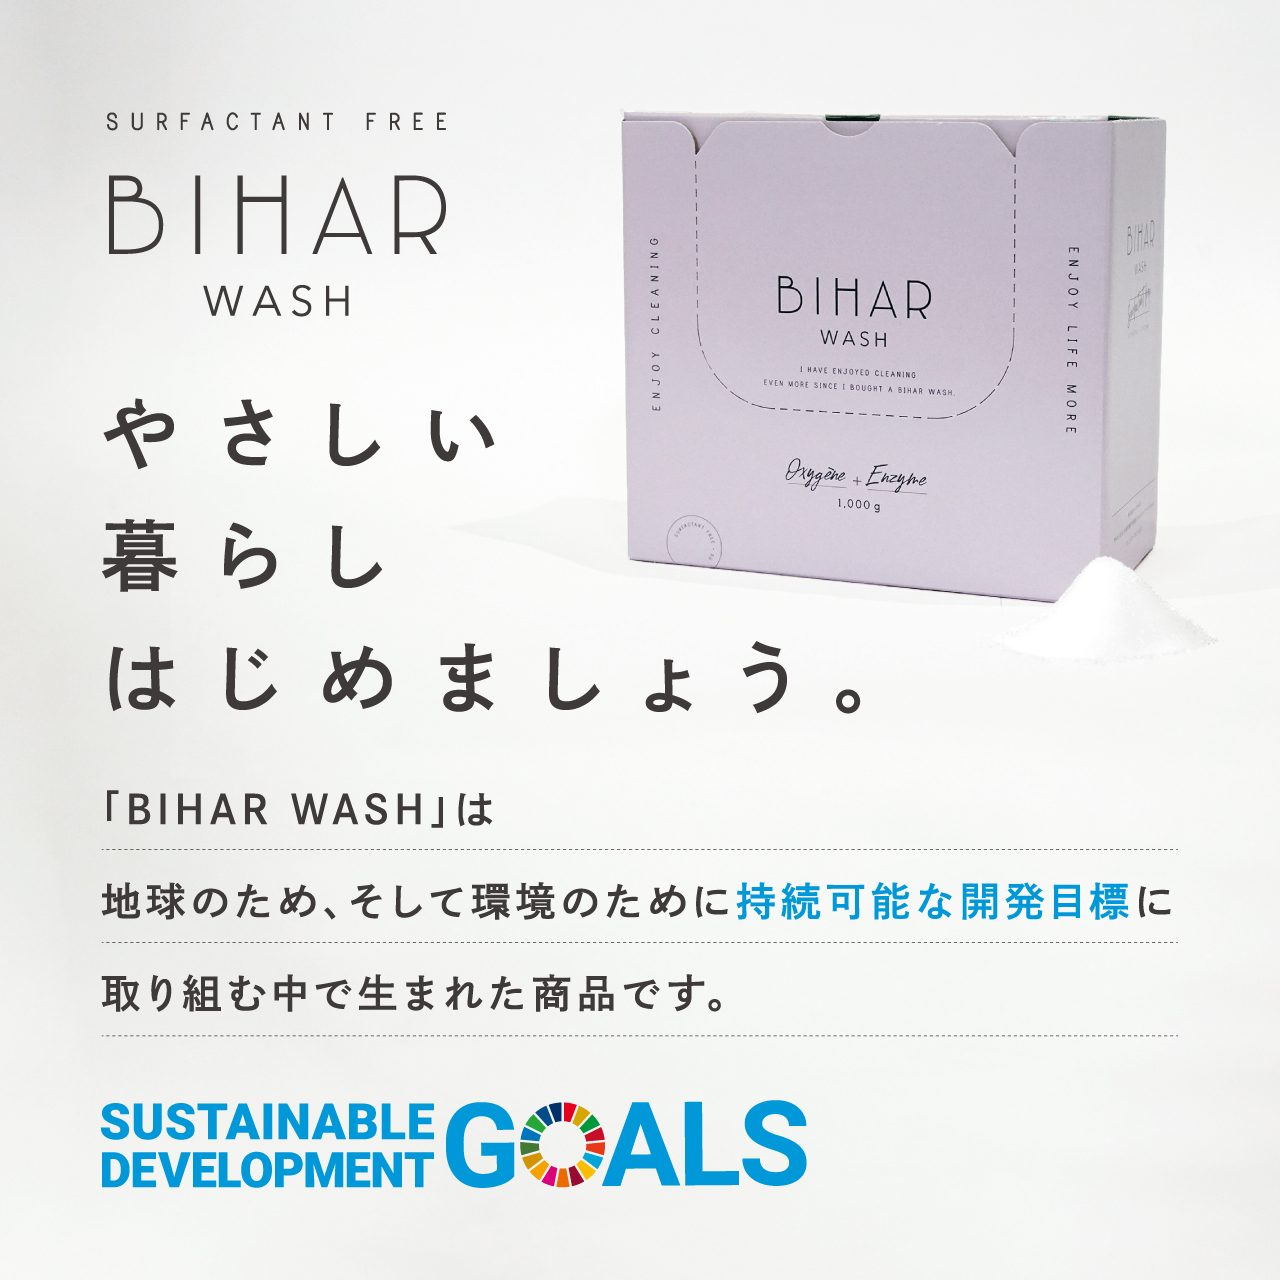 「BIHAR WASH」は地球のため、そして環境のために持続可能な開発目標に取り組む中で生まれた商品です。